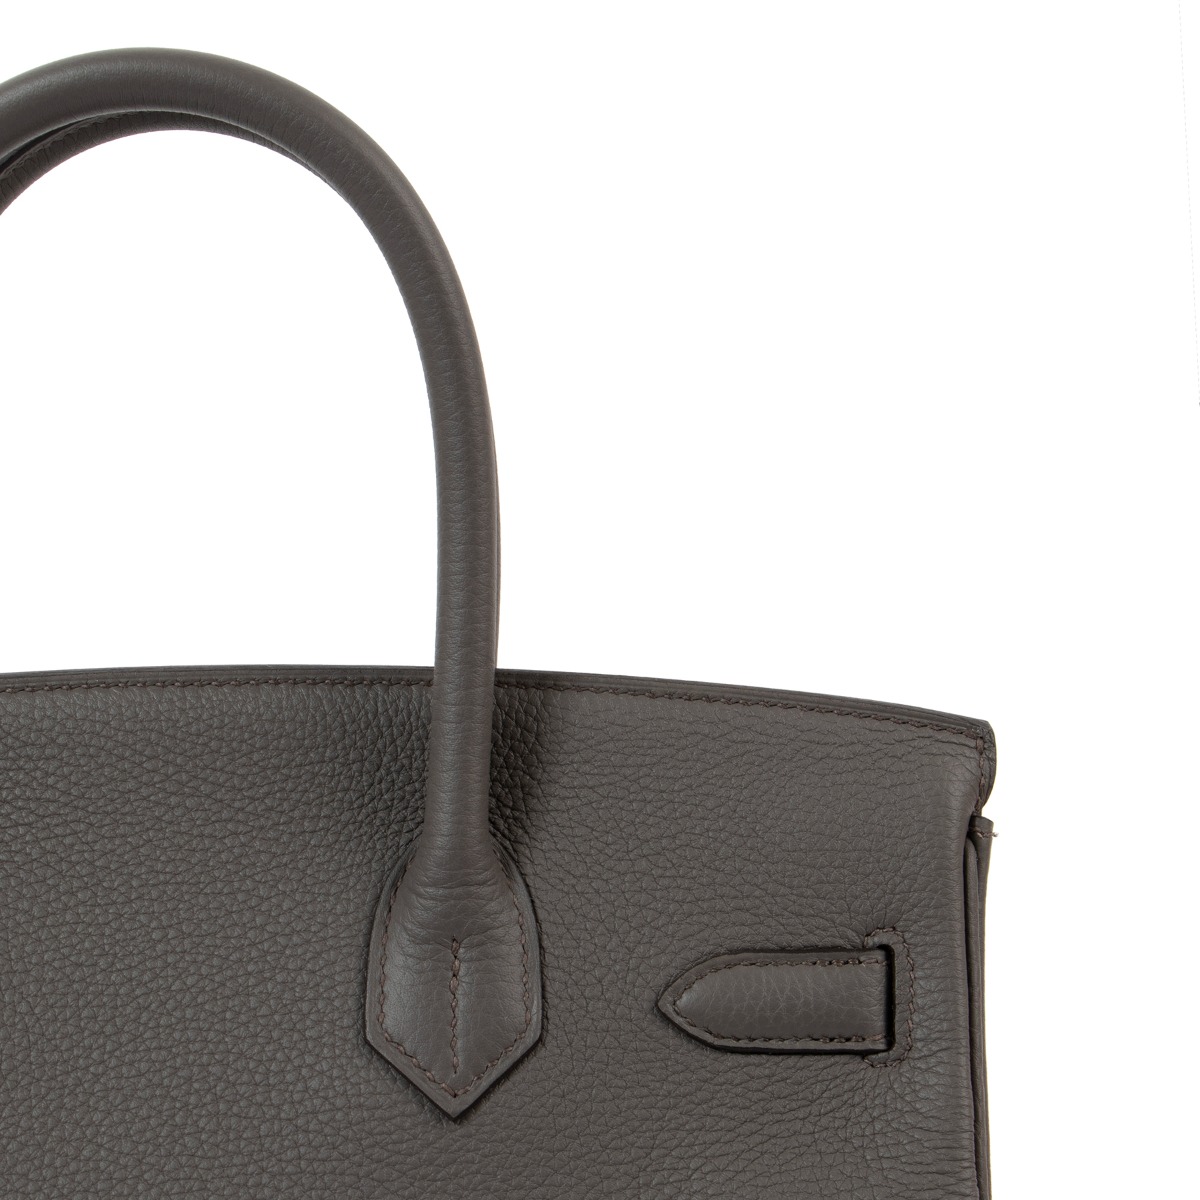 New] Hermès Birkin 30  Gris Perle, Togo Leather, Palladium